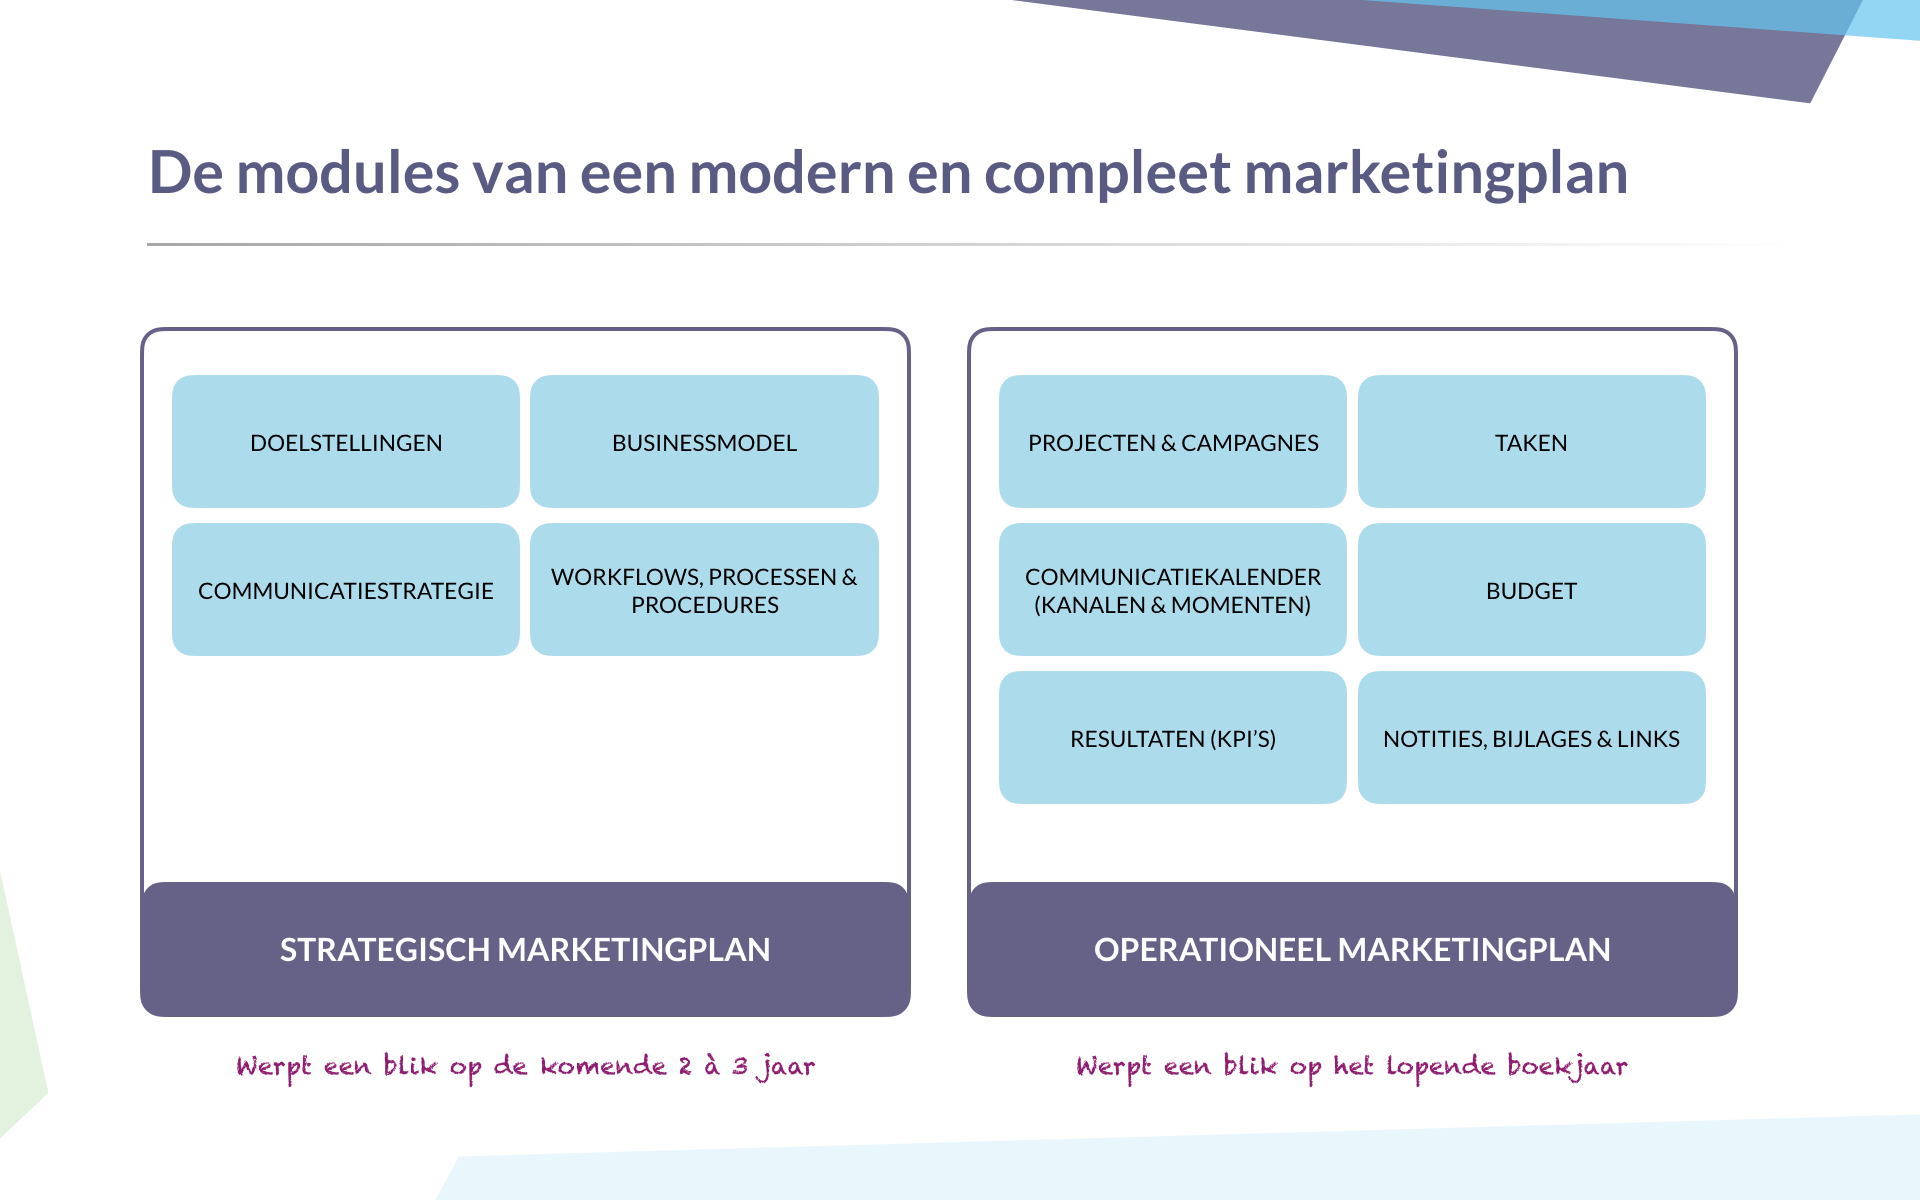 De modules van een modern marketingplan